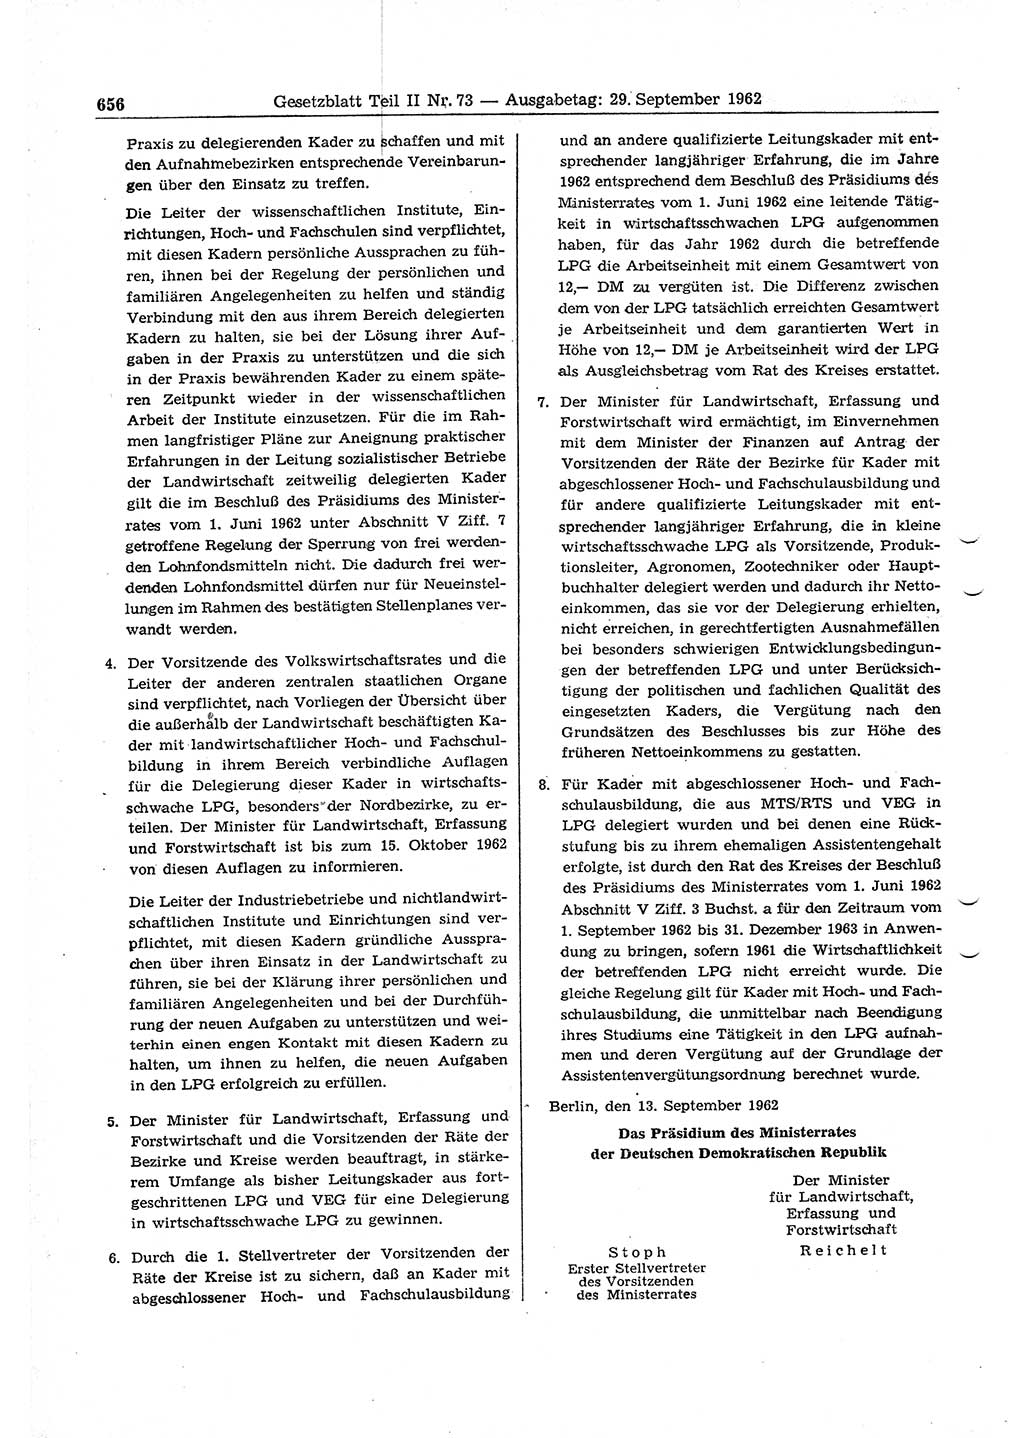 Gesetzblatt (GBl.) der Deutschen Demokratischen Republik (DDR) Teil ⅠⅠ 1962, Seite 656 (GBl. DDR ⅠⅠ 1962, S. 656)